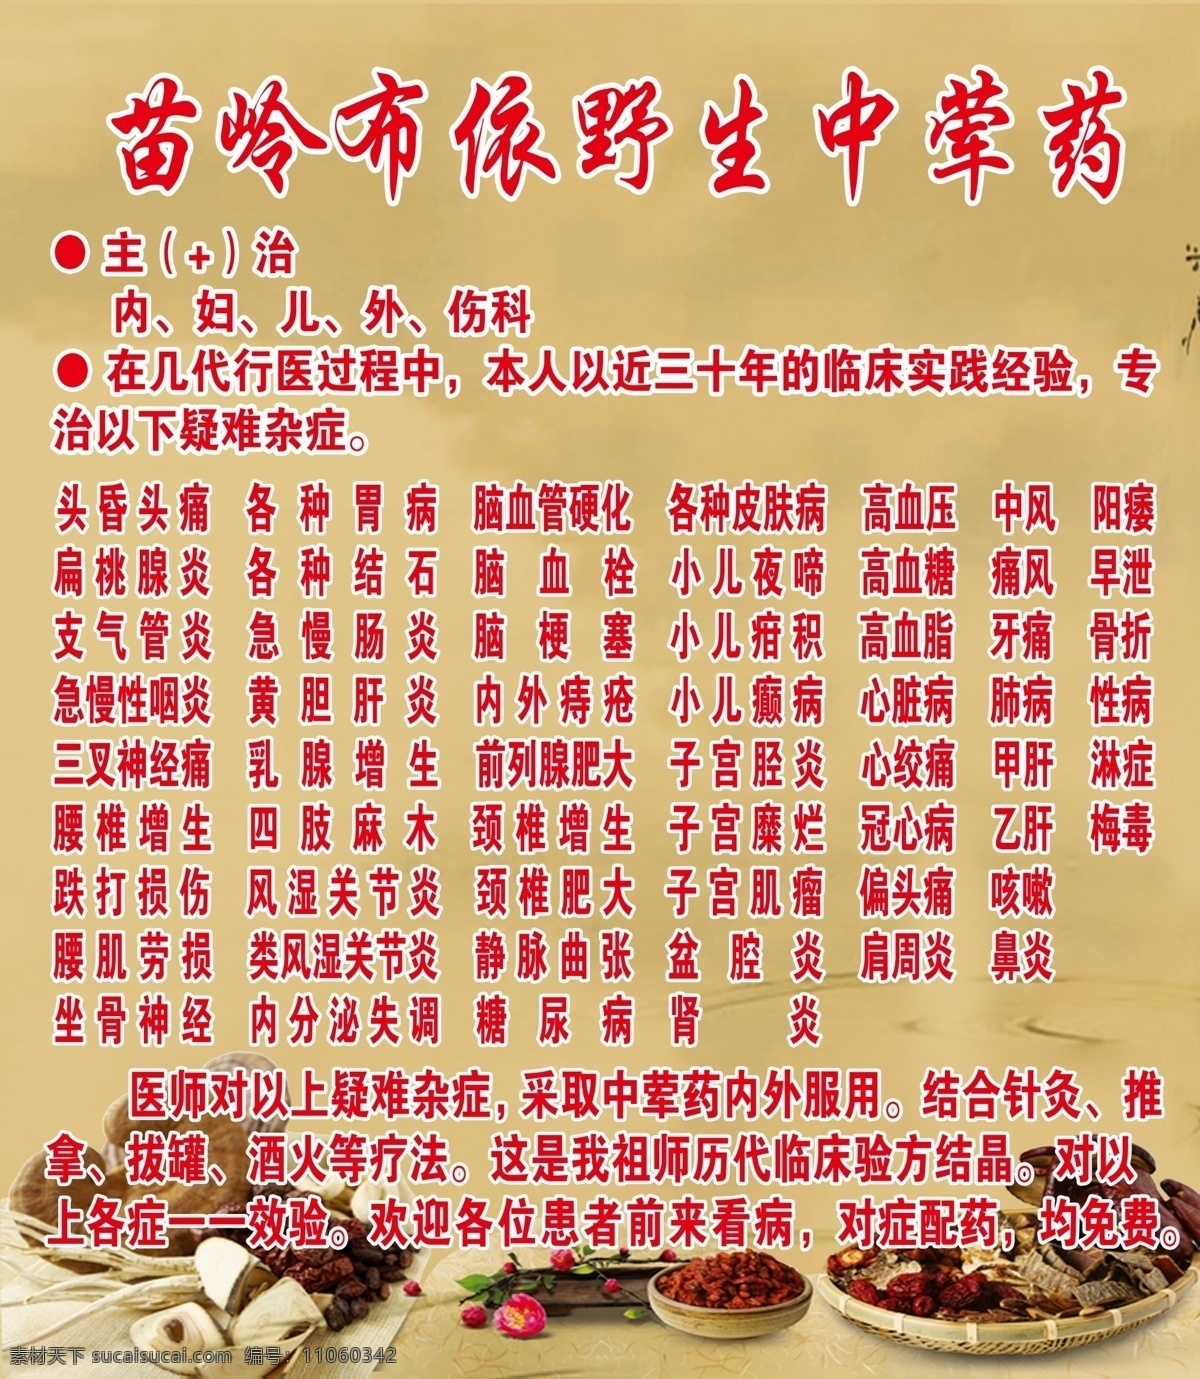 苗岭 布依 野生 中医药 展板 背景图 宣传 2016 展板模板 黄色